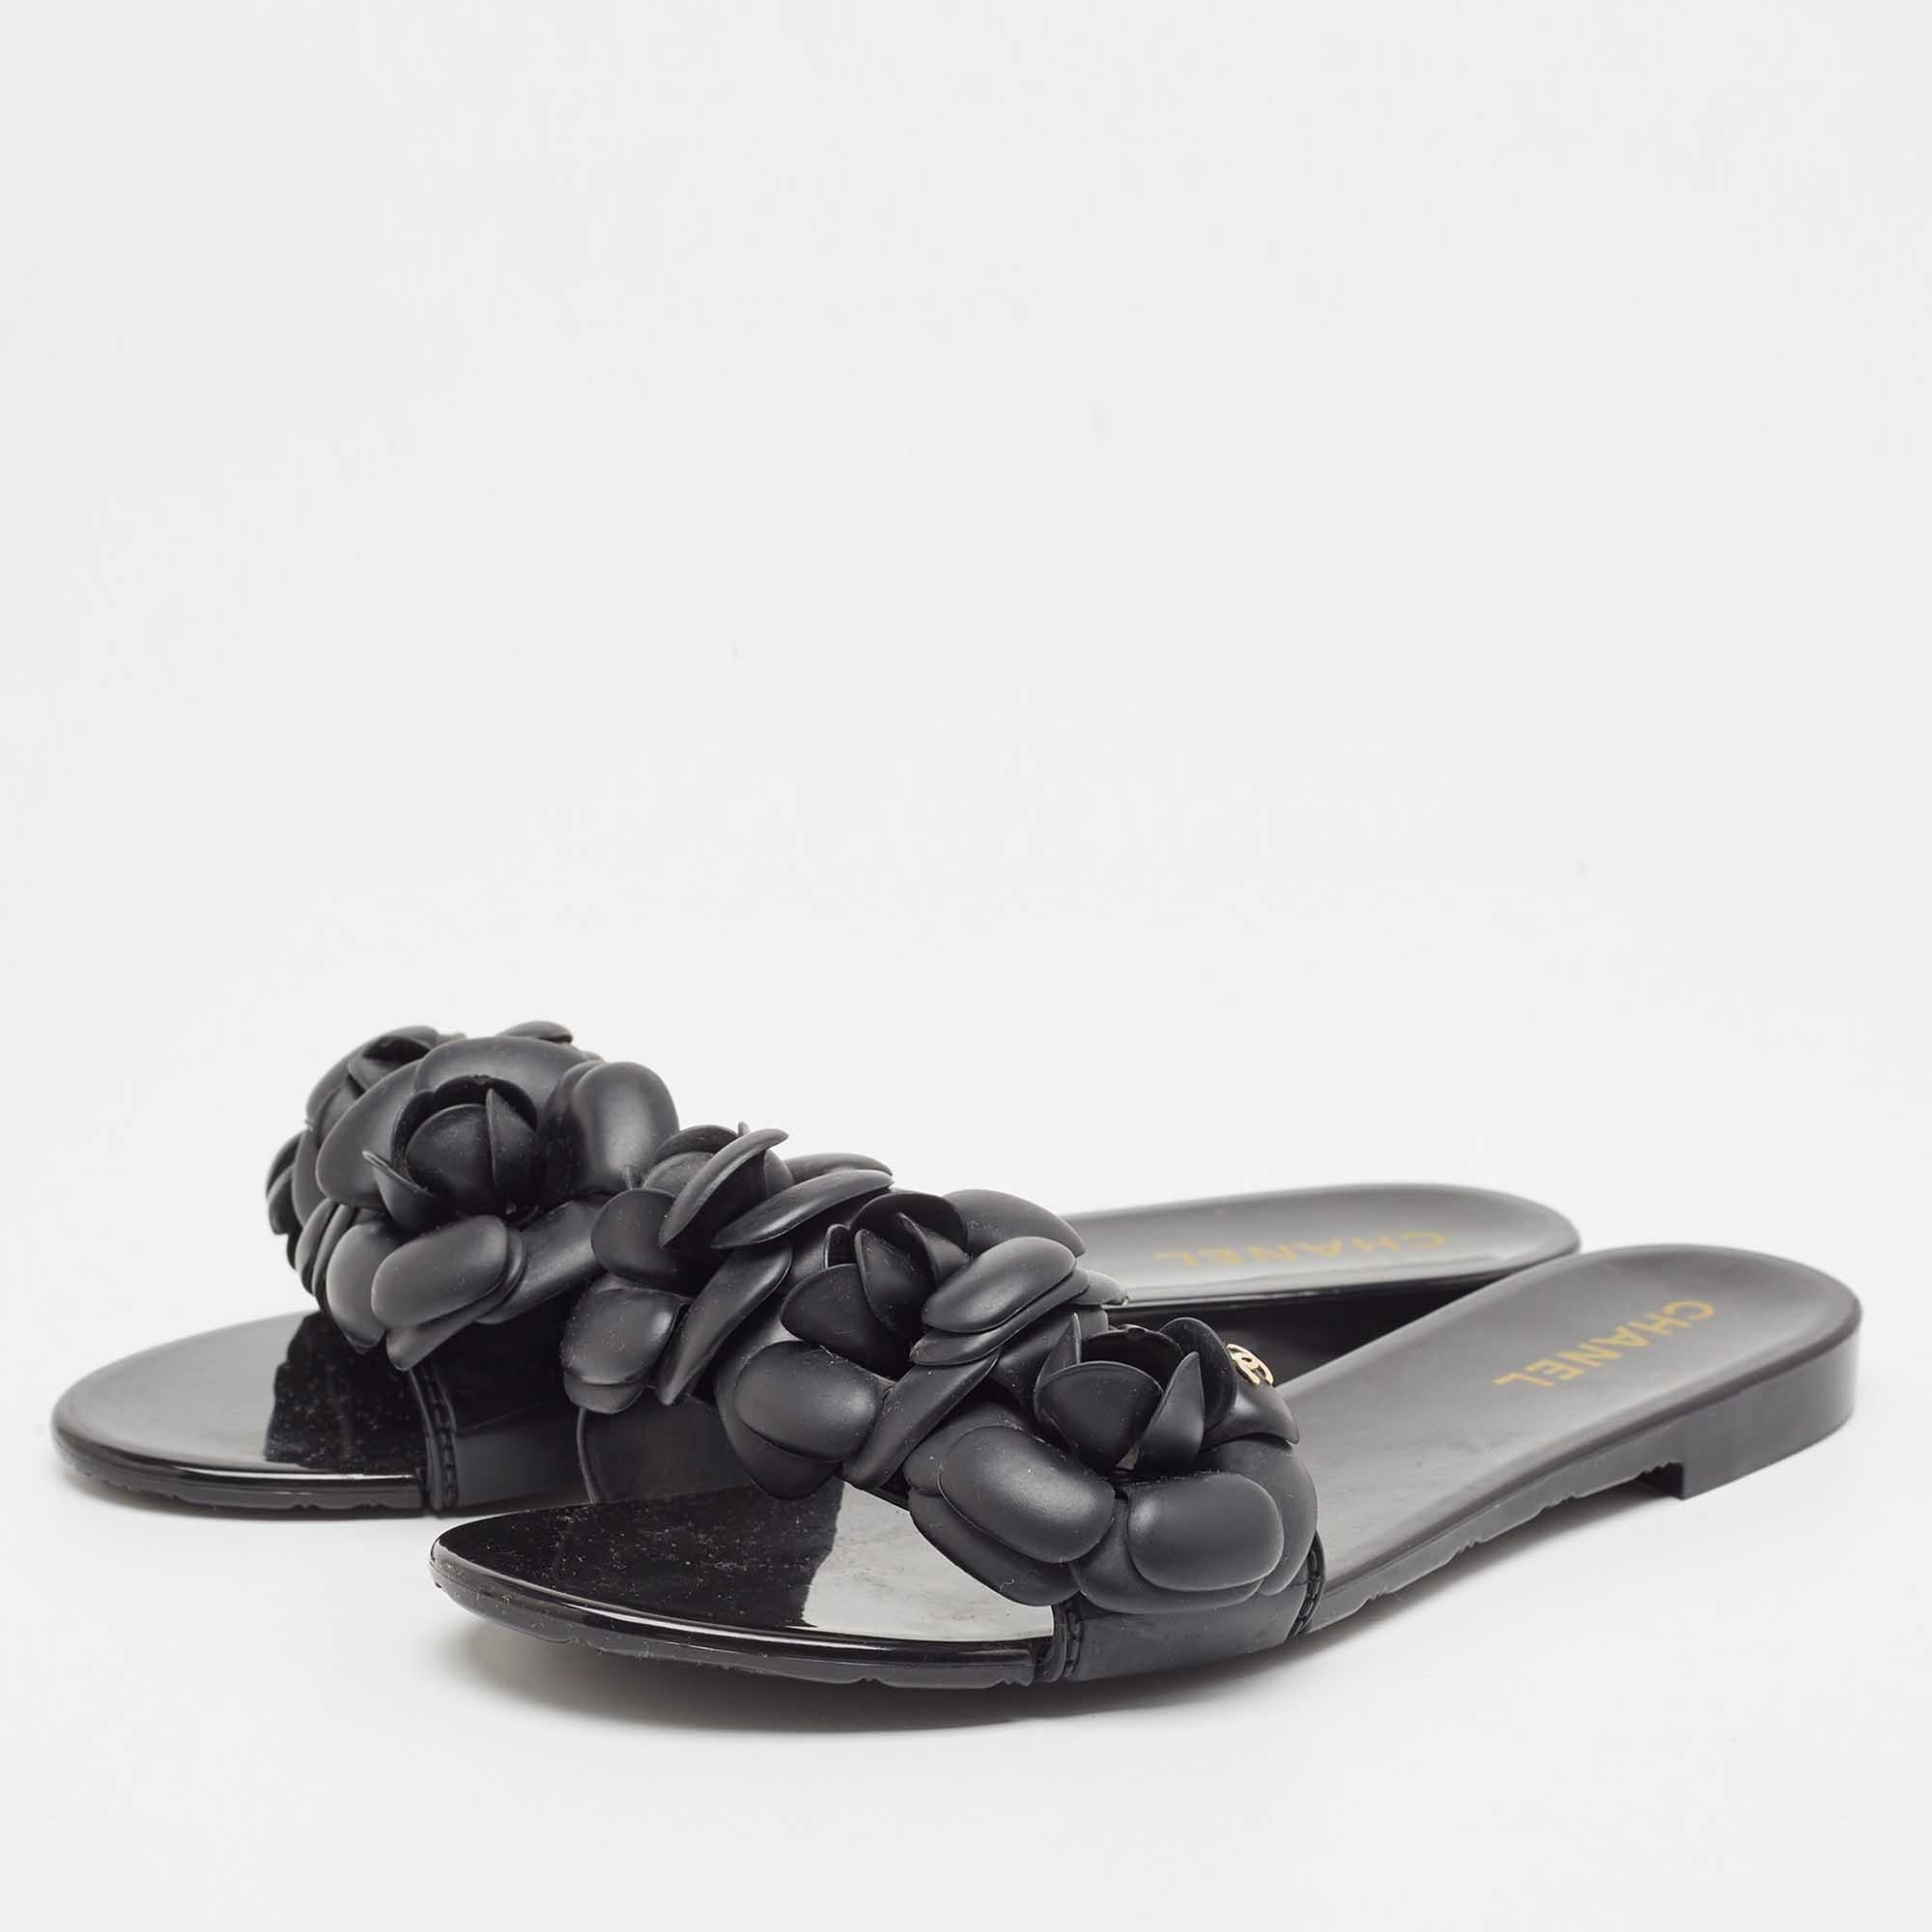 Encadrez vos pieds avec ces chaussures plates noires de Chanel. Créées à partir des meilleurs matériaux, les chaussures plates sont parfaites avec des ourlets courts, midi et maxi.

